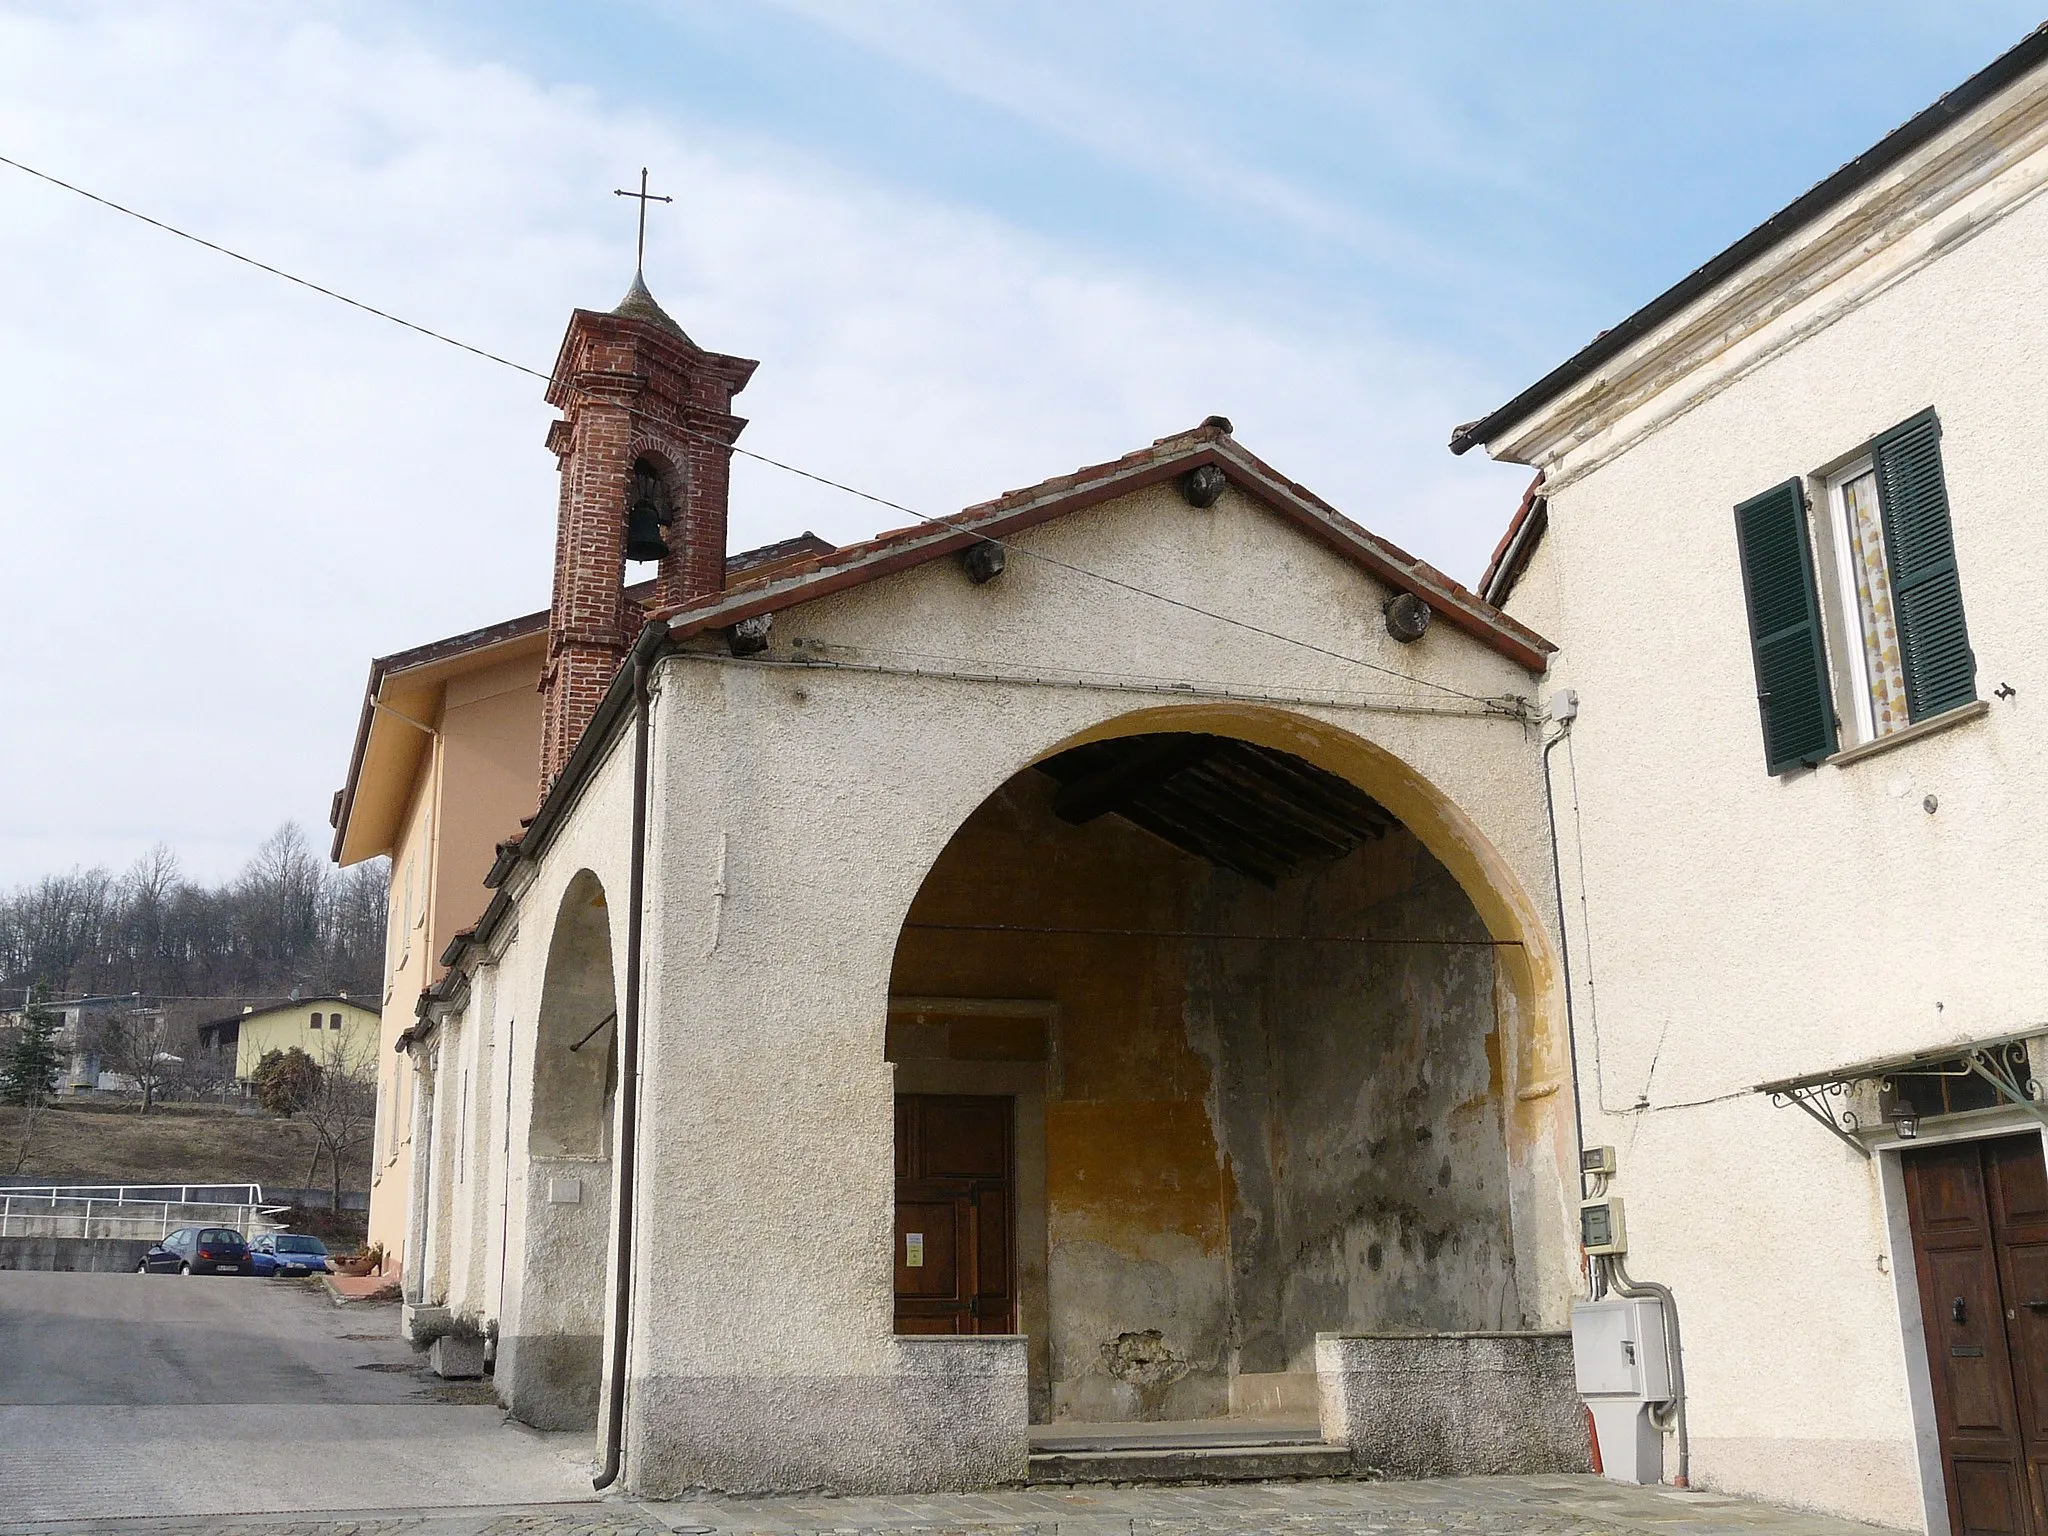 Photo showing: Church"Oratorio dei Disciplinanti" in Cosseria, Italy